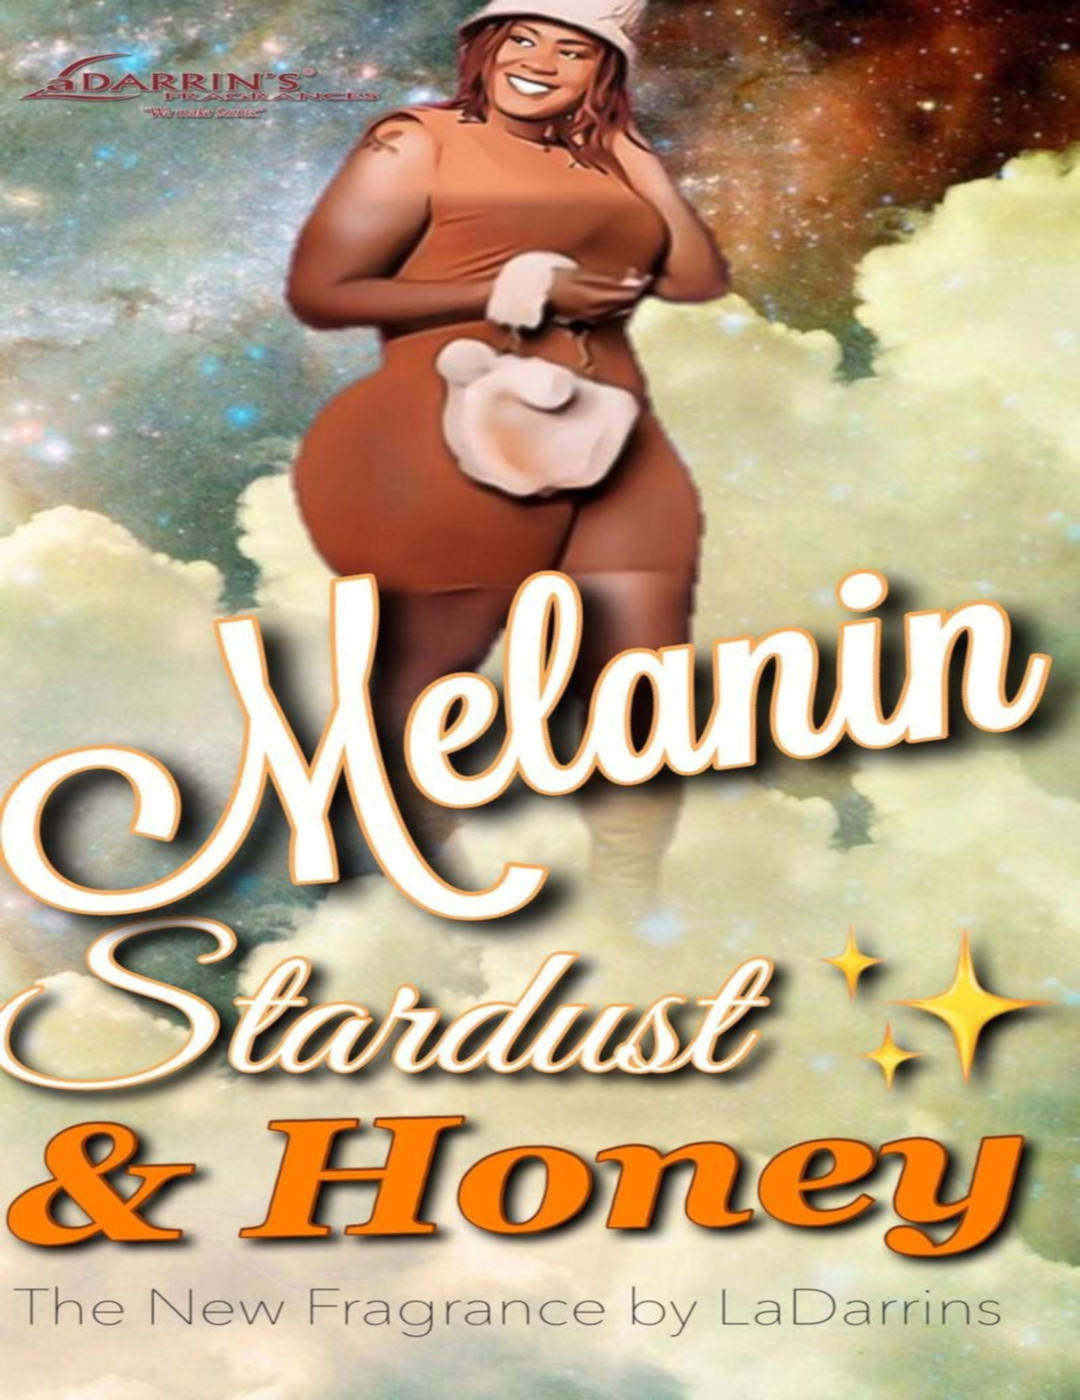 Melanin stardust adjusted slide ad